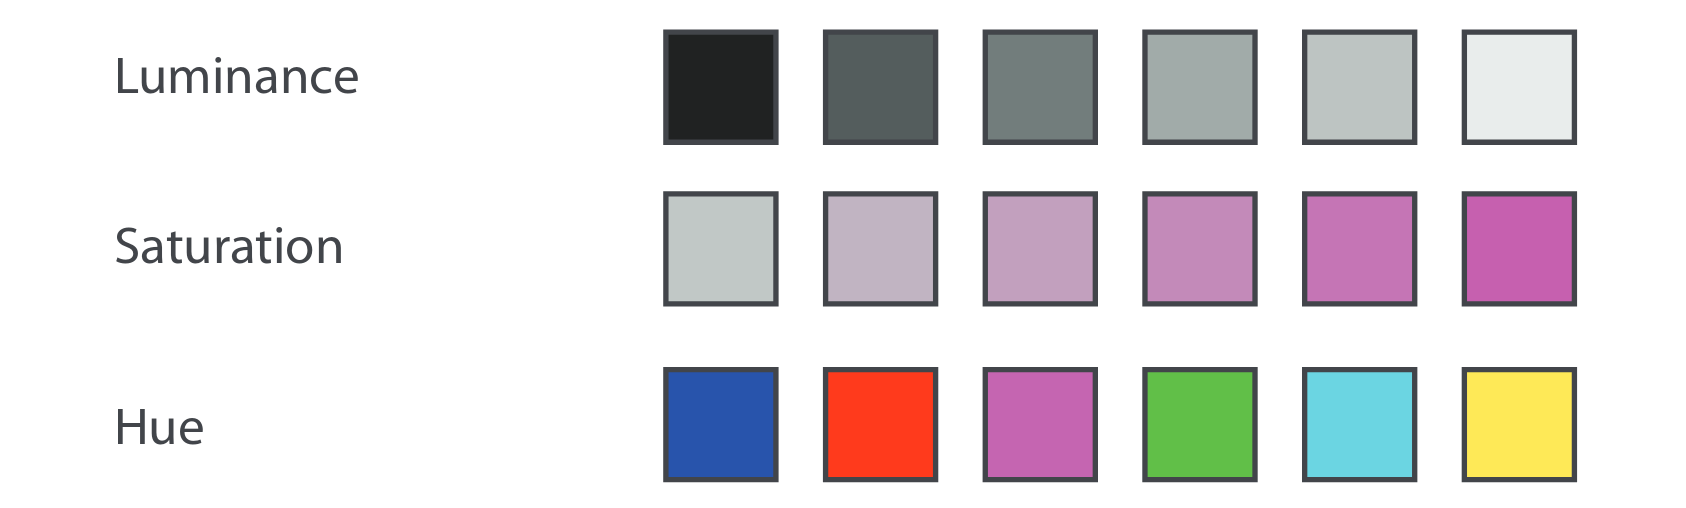 Paletas de colores donde varía un único canal. Fuente: Visualization Analysis & Design.